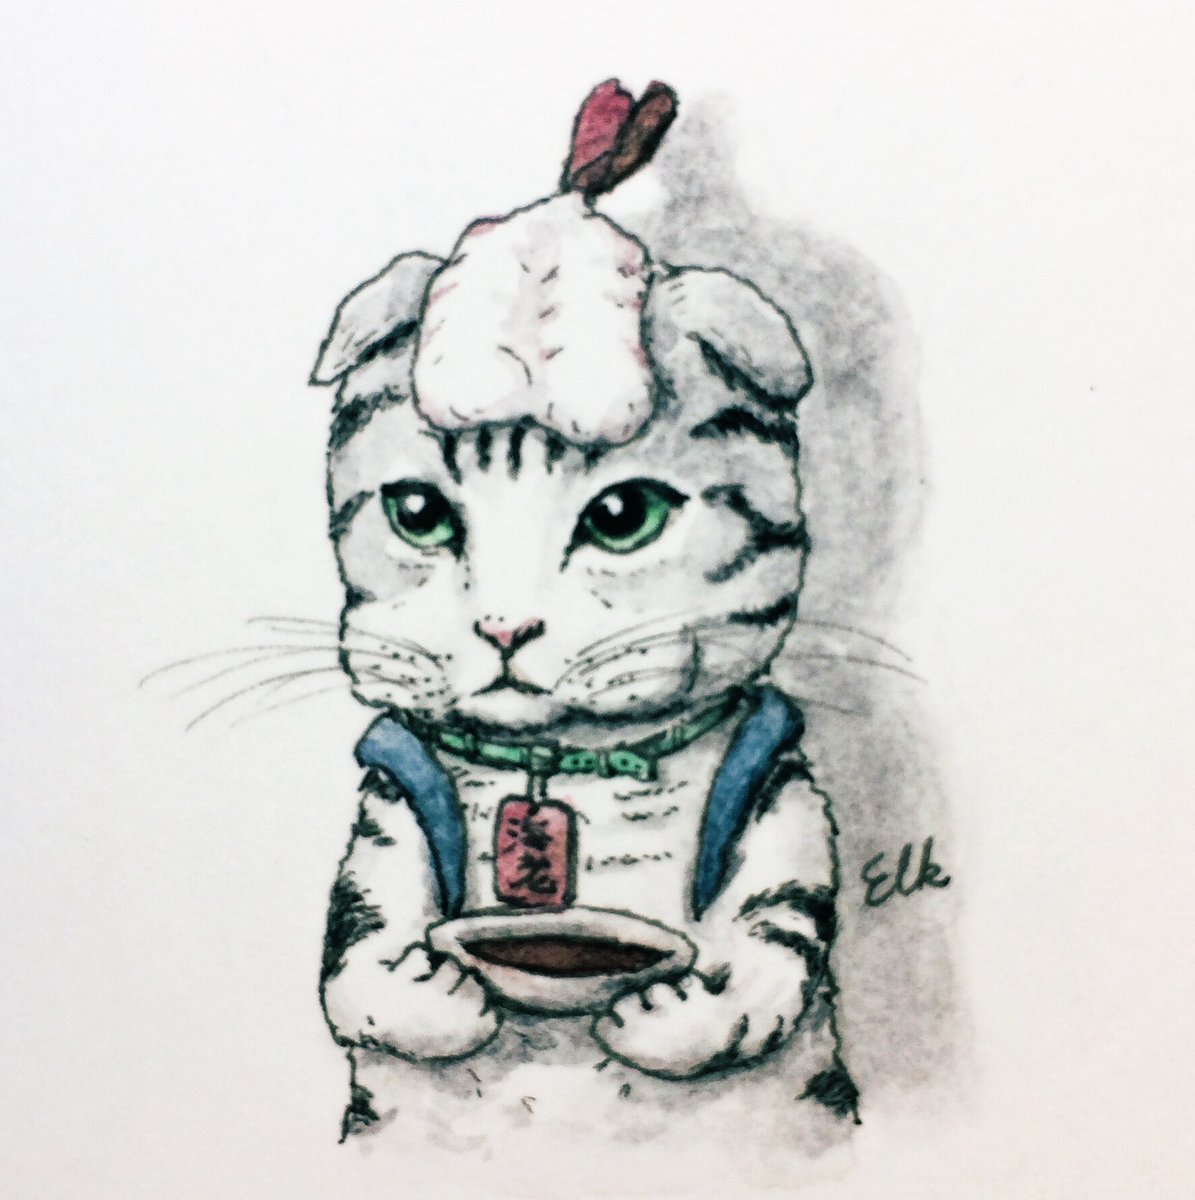 「『寿司猫(エビはどこいった)』?
#イラスト  #水彩  #過去絵 」|エルクポットの動物群像絵🐾のイラスト